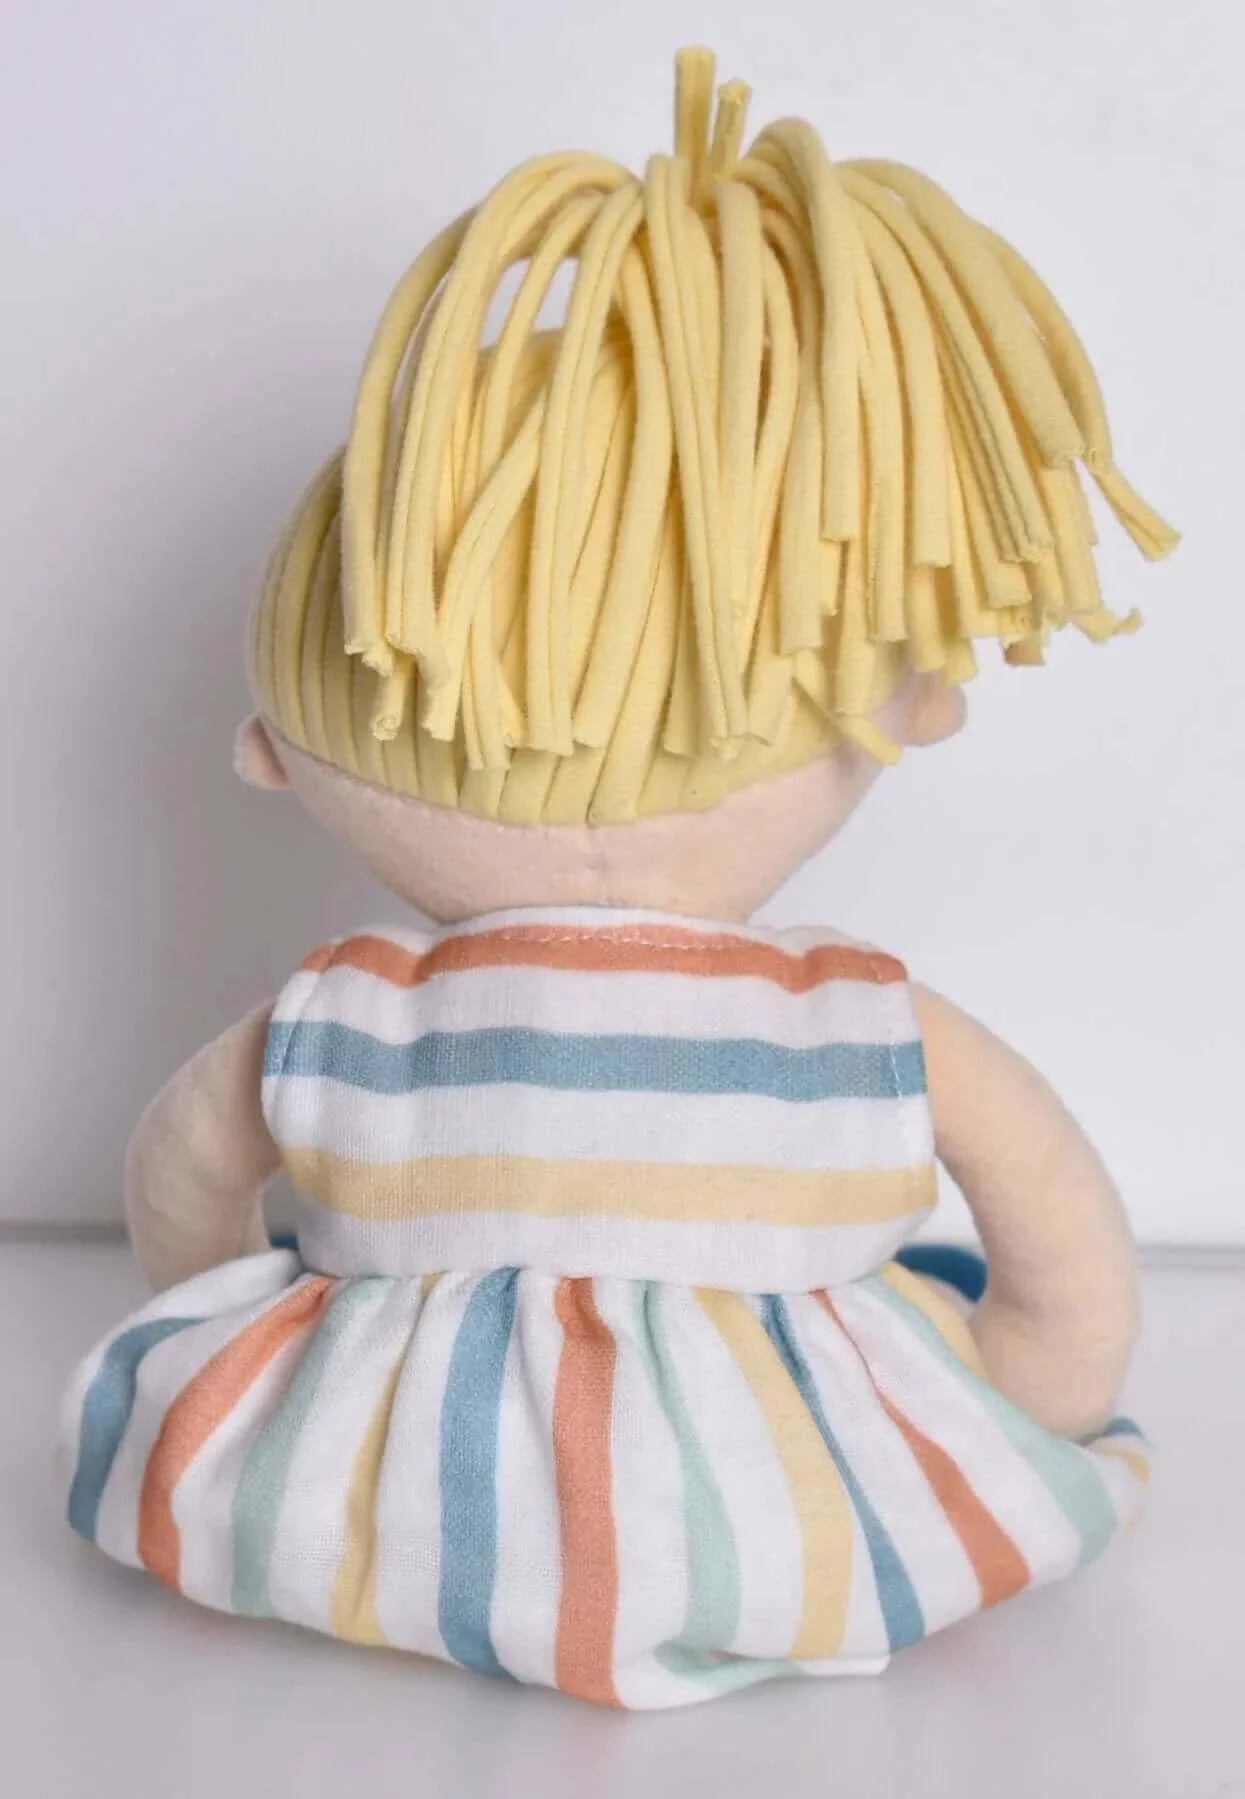 Taylor Blonde Hair Doll, Tikiri Toys, eco-friendly Toys, Mountain Kids Toys